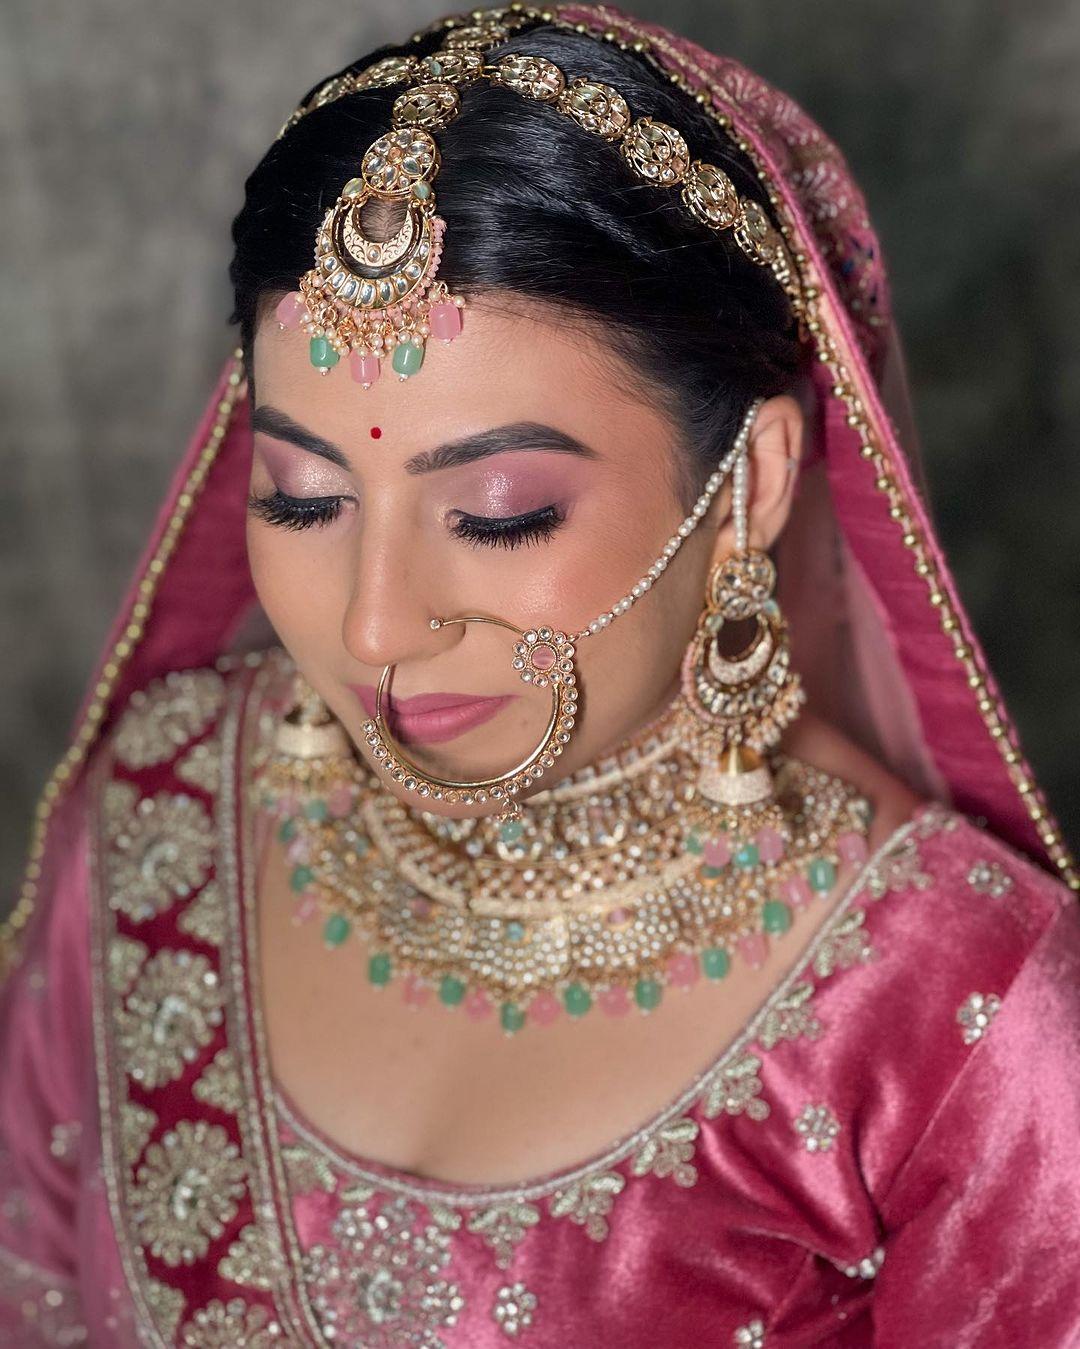 class="content__text"
 BRIDE Shefali🩷🌸✨

Makeup : @priyanshisonimua 

 #bride #bridalmakeup #bridalmakeupartist #indianbride #wedding #indianwedding #indianweddings #trending #minimalmakeup #naturalmakeup #dewymakeup #photo #photooftheday #bridalmakeuplook #trendingbrides #foryou #explore #explorepage #indianwear 
 